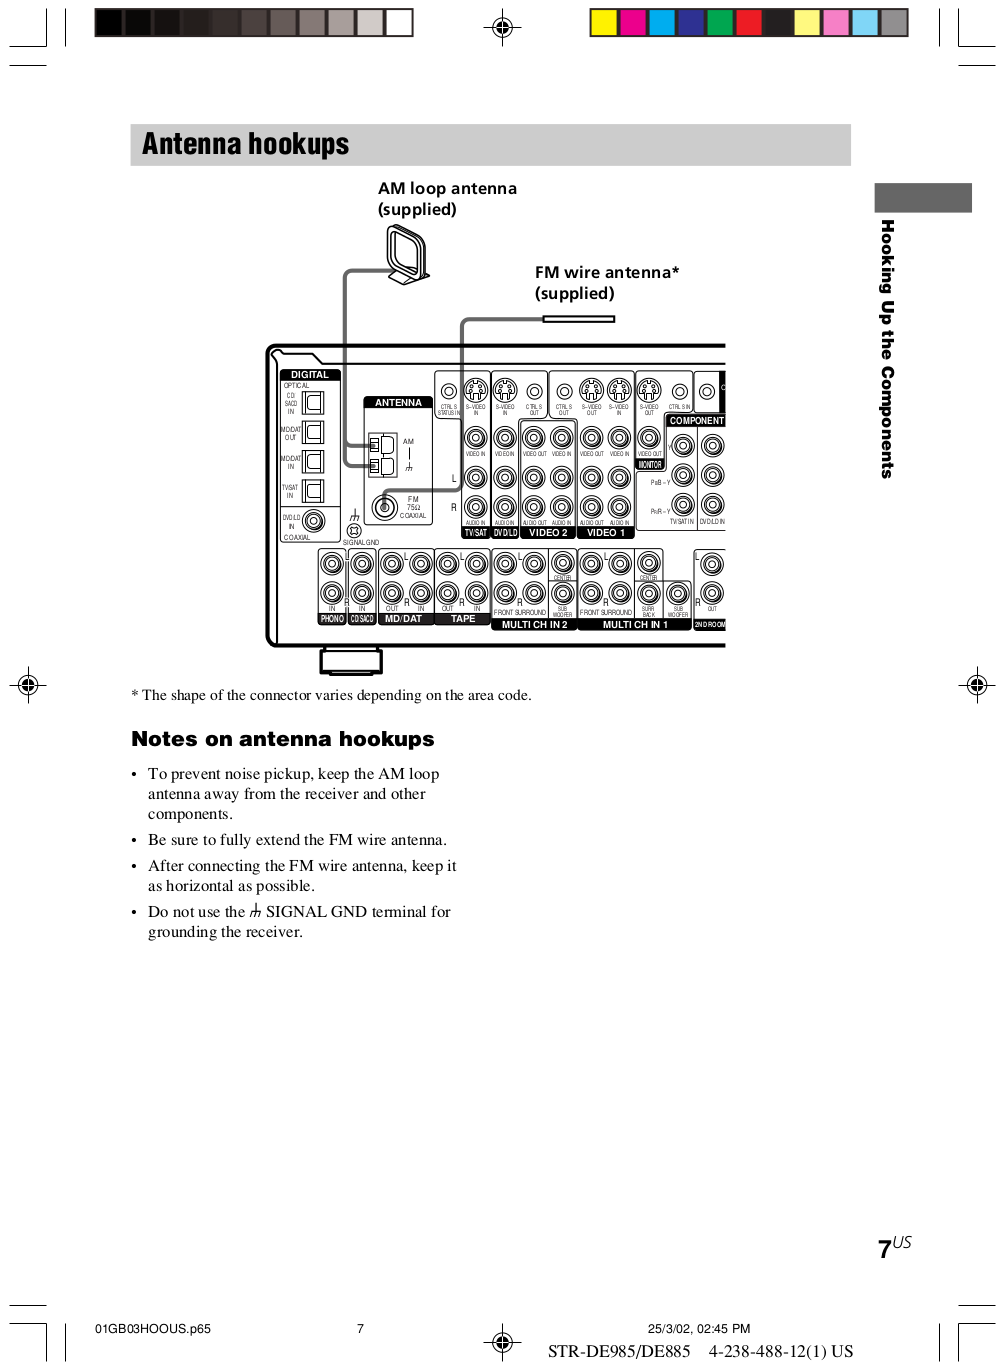 PDF manual for Sony Receiver STR-DE885